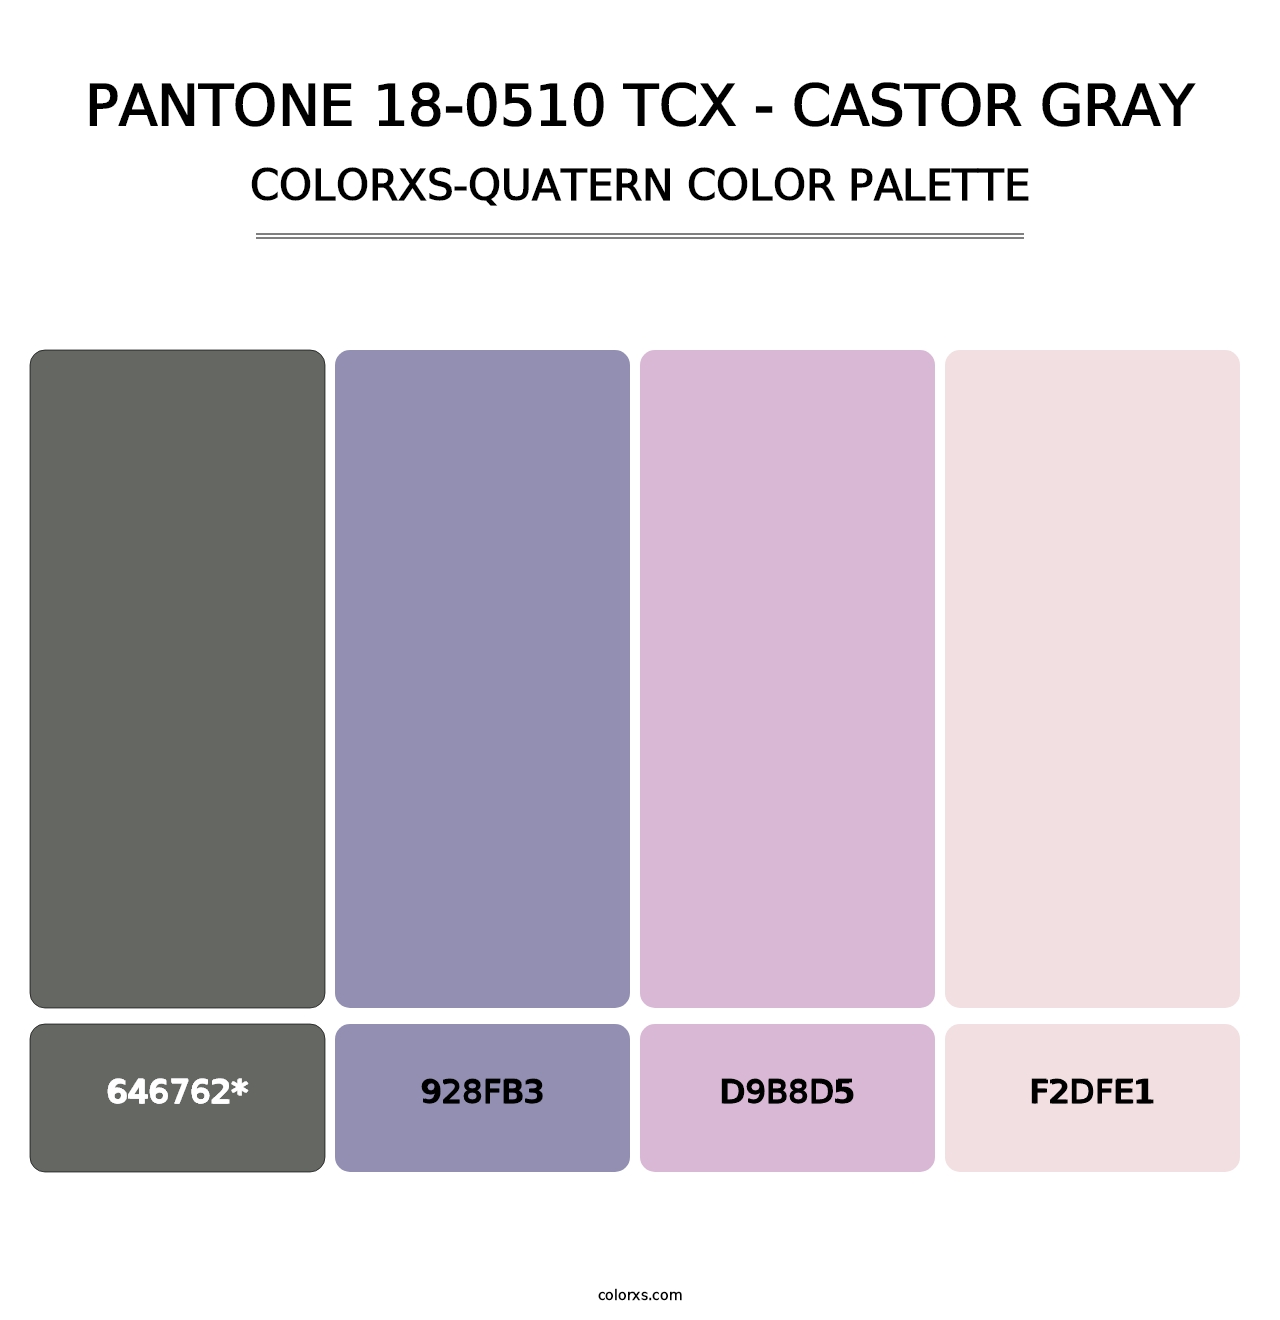 PANTONE 18-0510 TCX - Castor Gray - Colorxs Quatern Palette